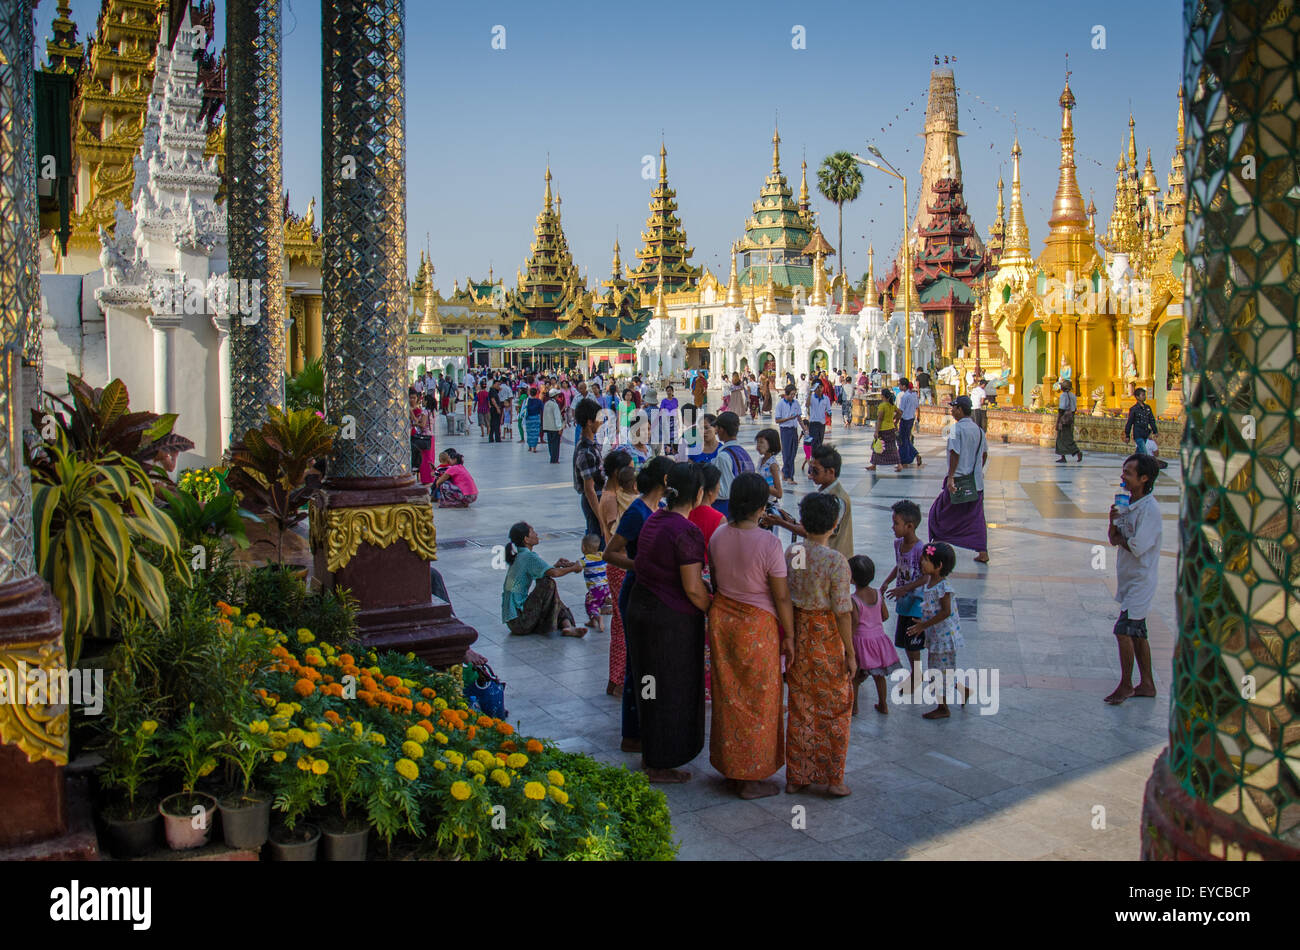 People at Shwedagon Pagoda, Yangon, Myanmar Stock Photo